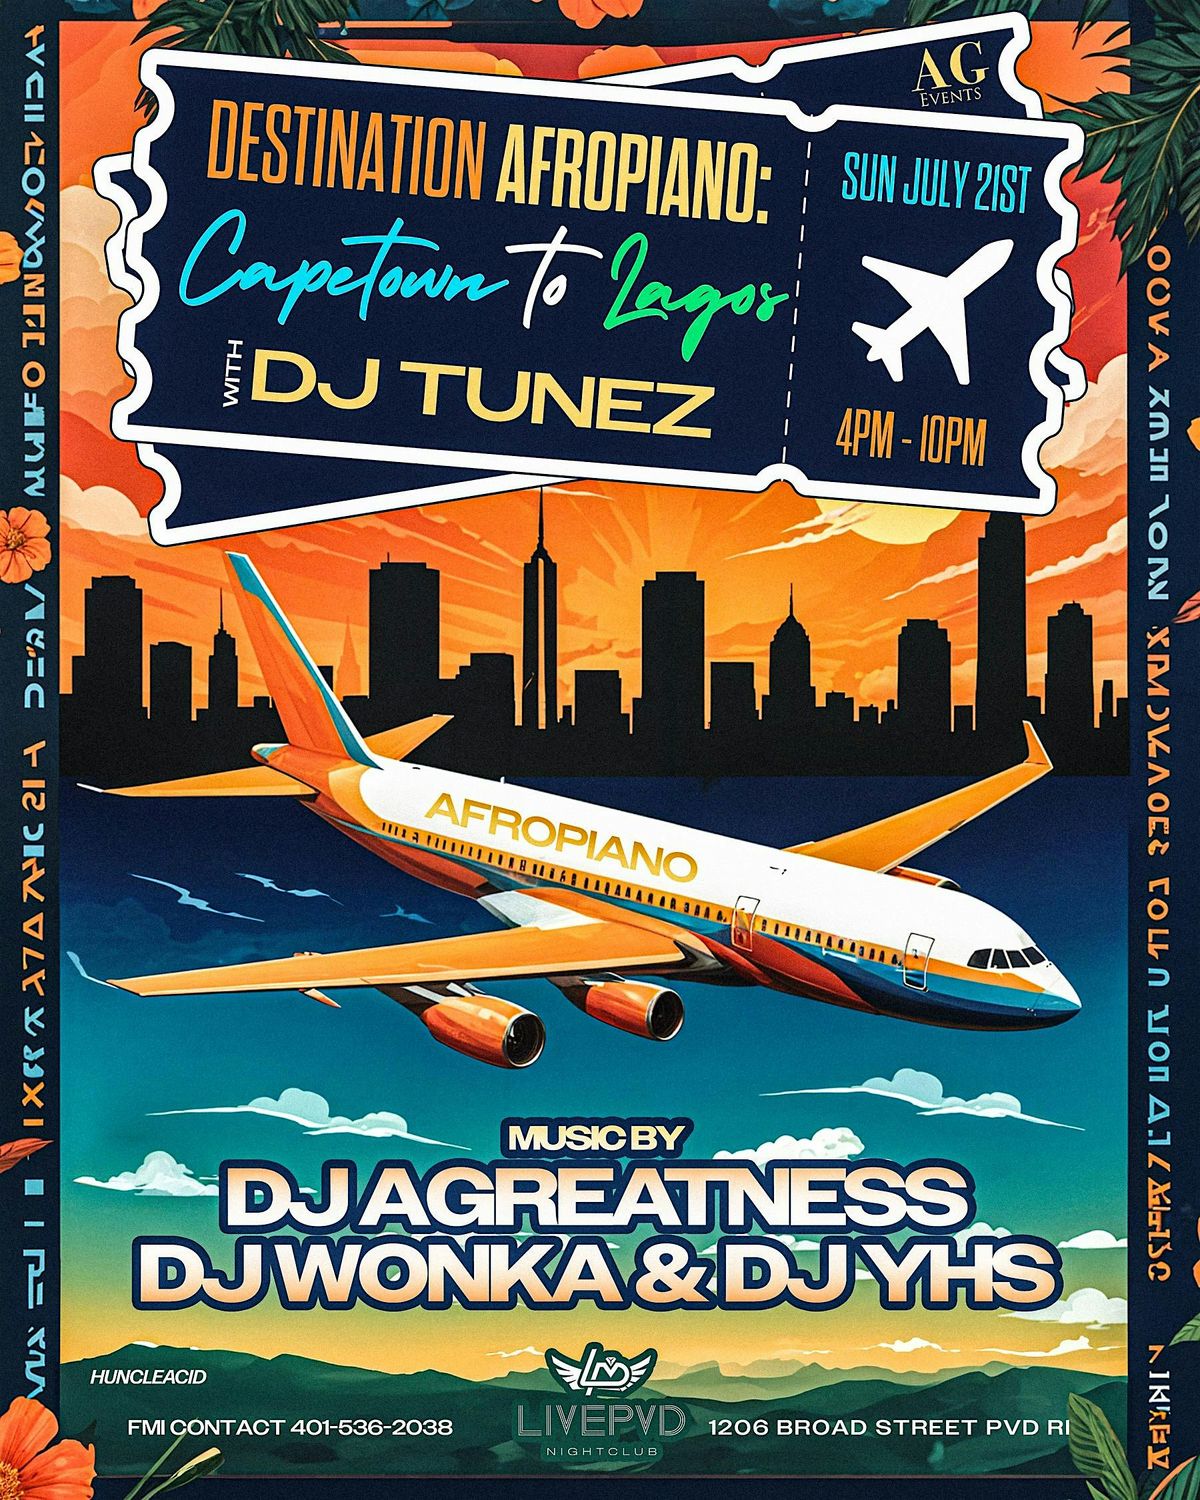 Destination AfroPiano: Capetown To Lagos With DJ TUNEZ